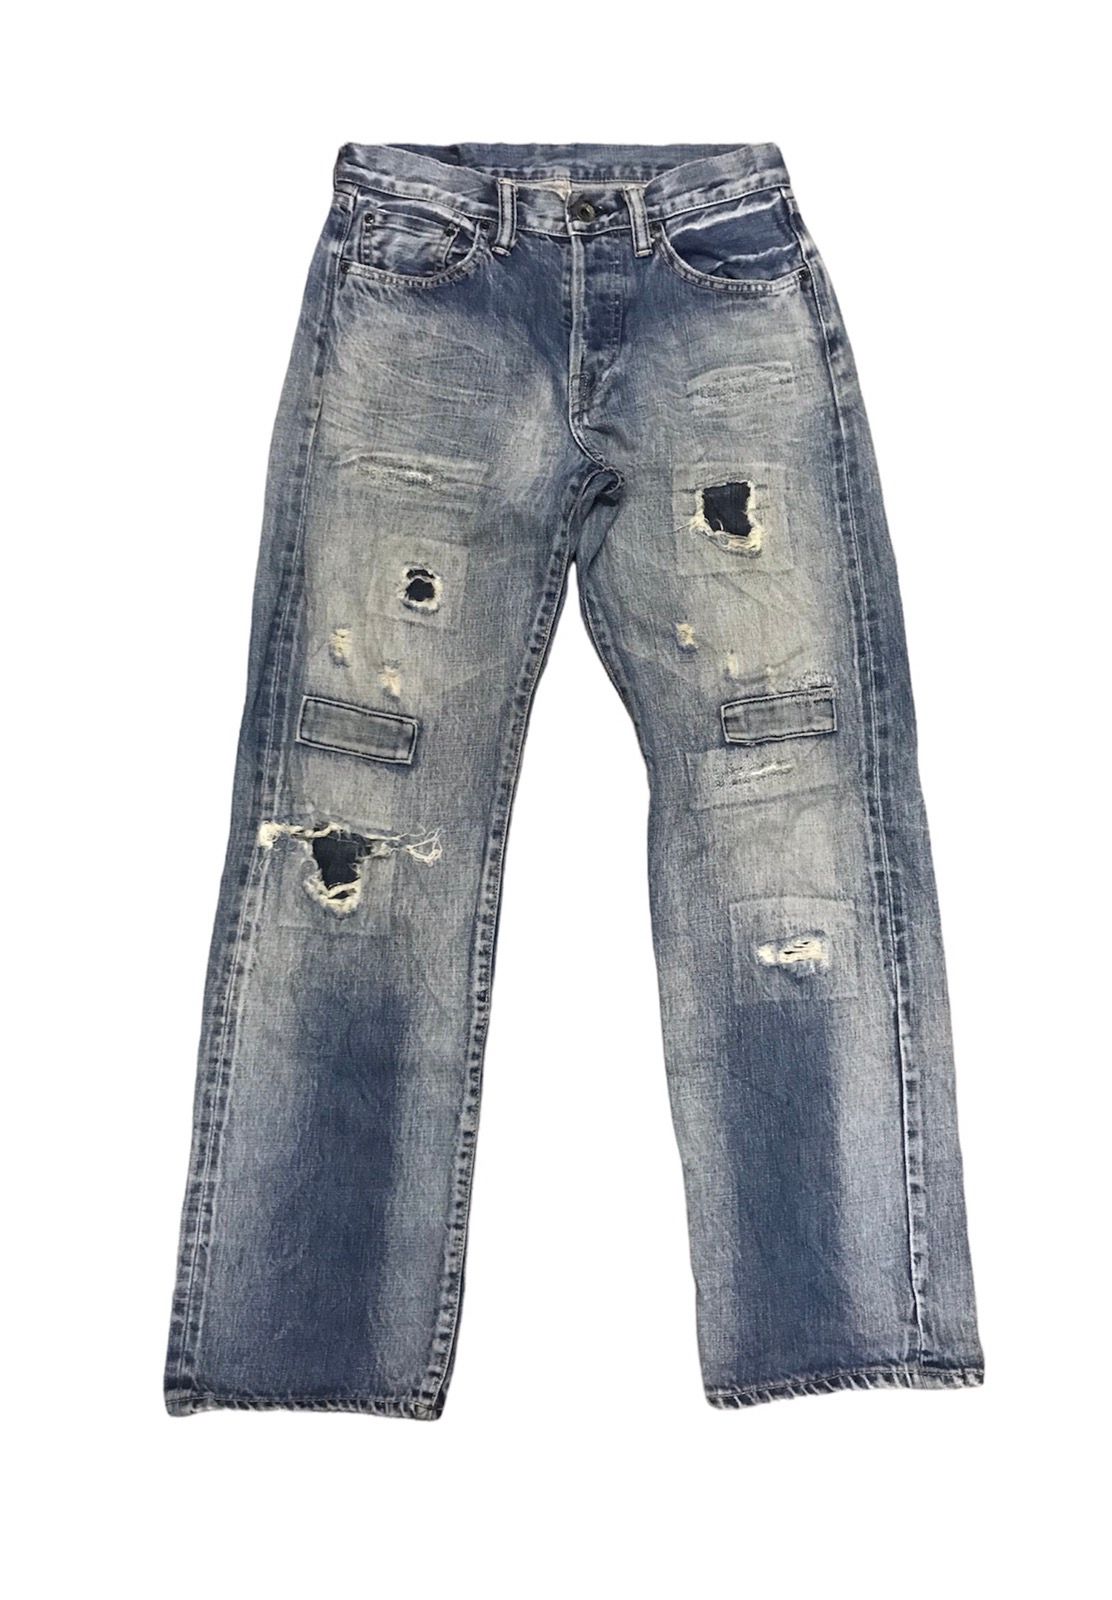 5351 Pour Les Hommes Vintage Reproduction Selvedge Denim Jeans Levi’s ...